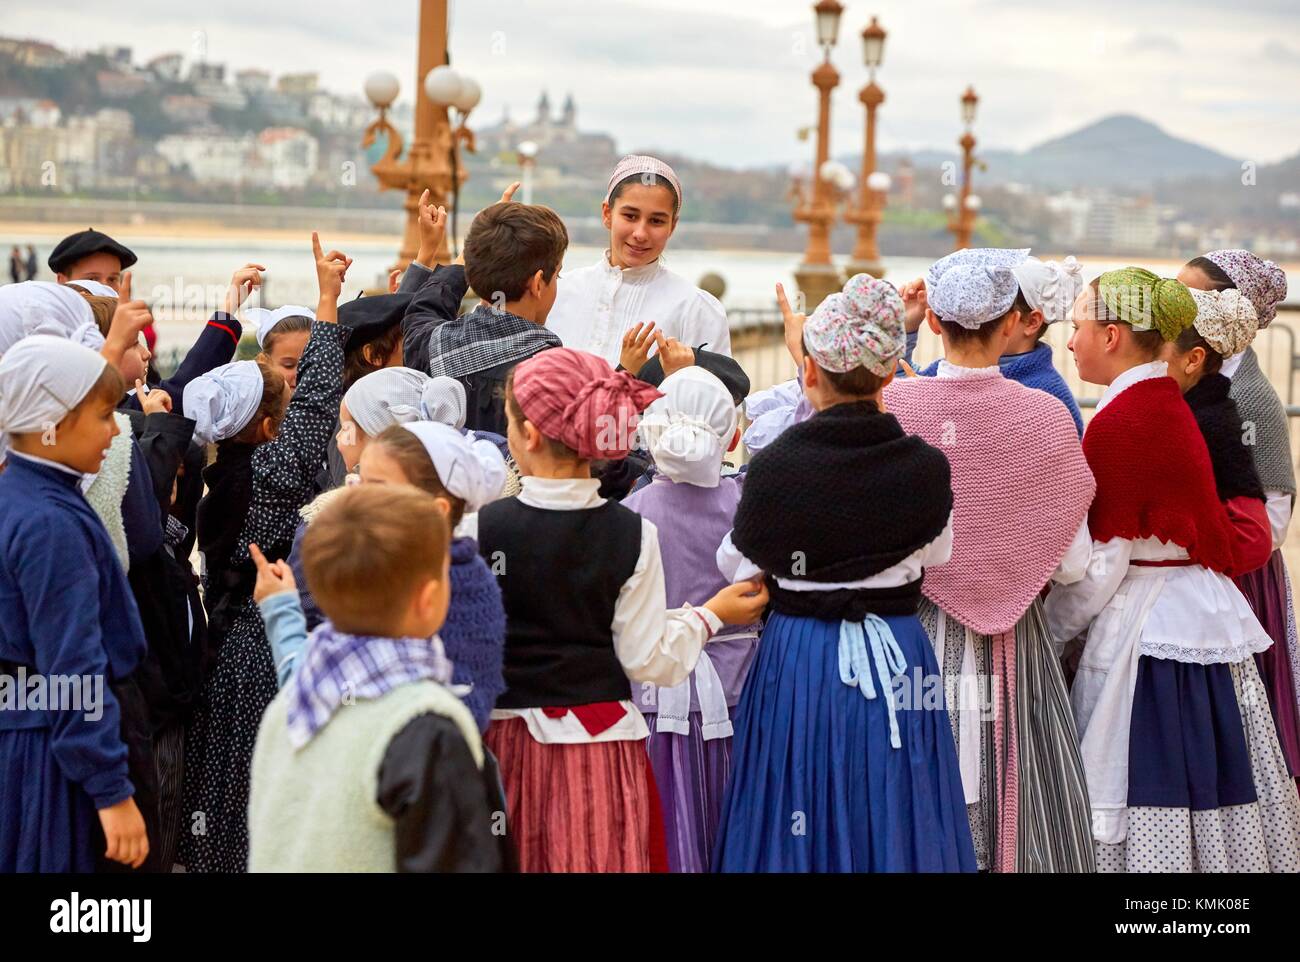 Basque regional costumes, Olentzero, Christmas, Town hall, Donostia, San Sebastian, Gipuzkoa, Basque Country, Spain, Europe Stock Photo